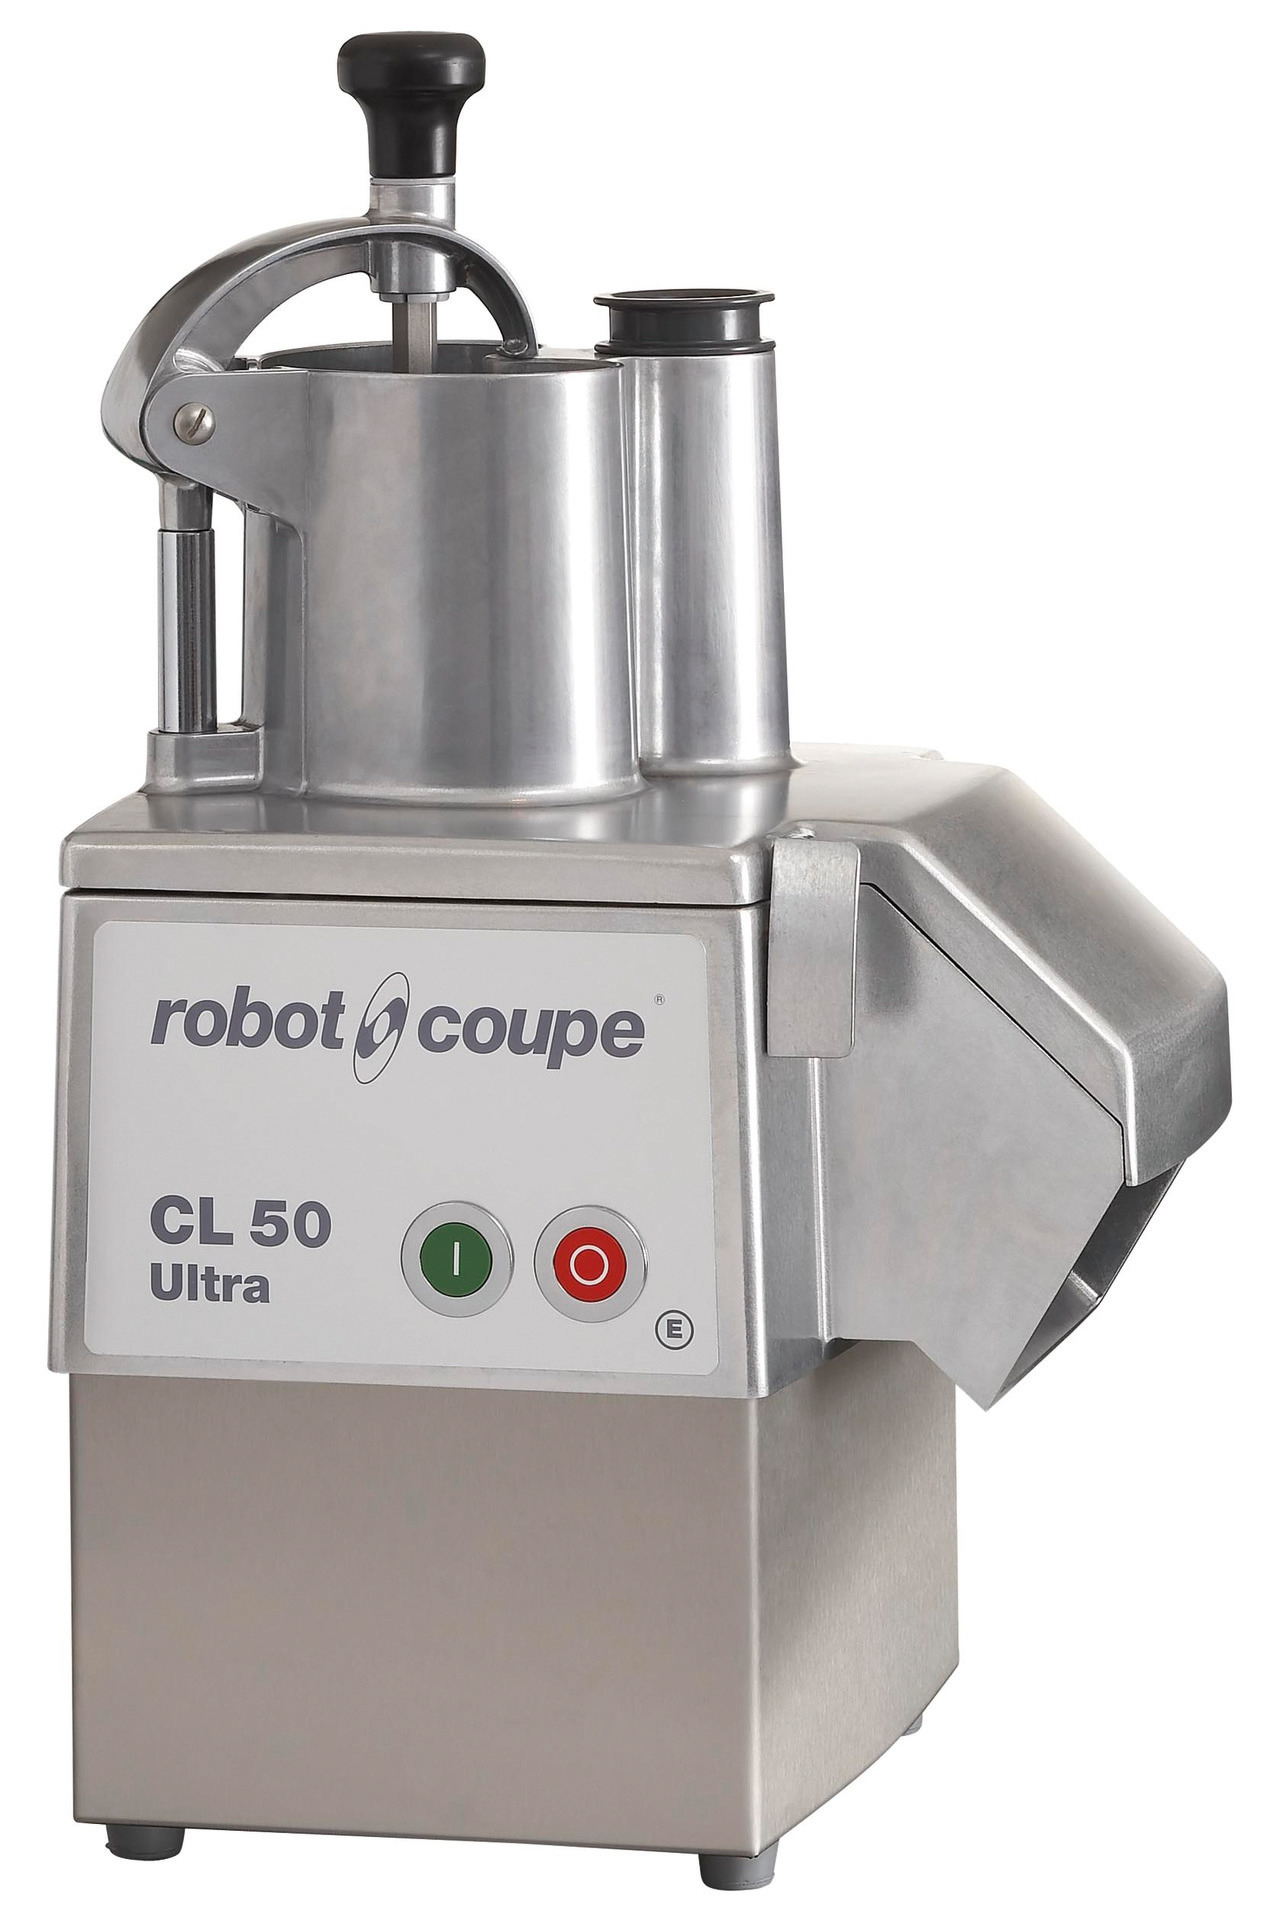 GEMÜSESCHNEIDER ROBOT CL 50 ULTRA 230 V, 550 W., Lieferung ohne Scheiben, # 24465